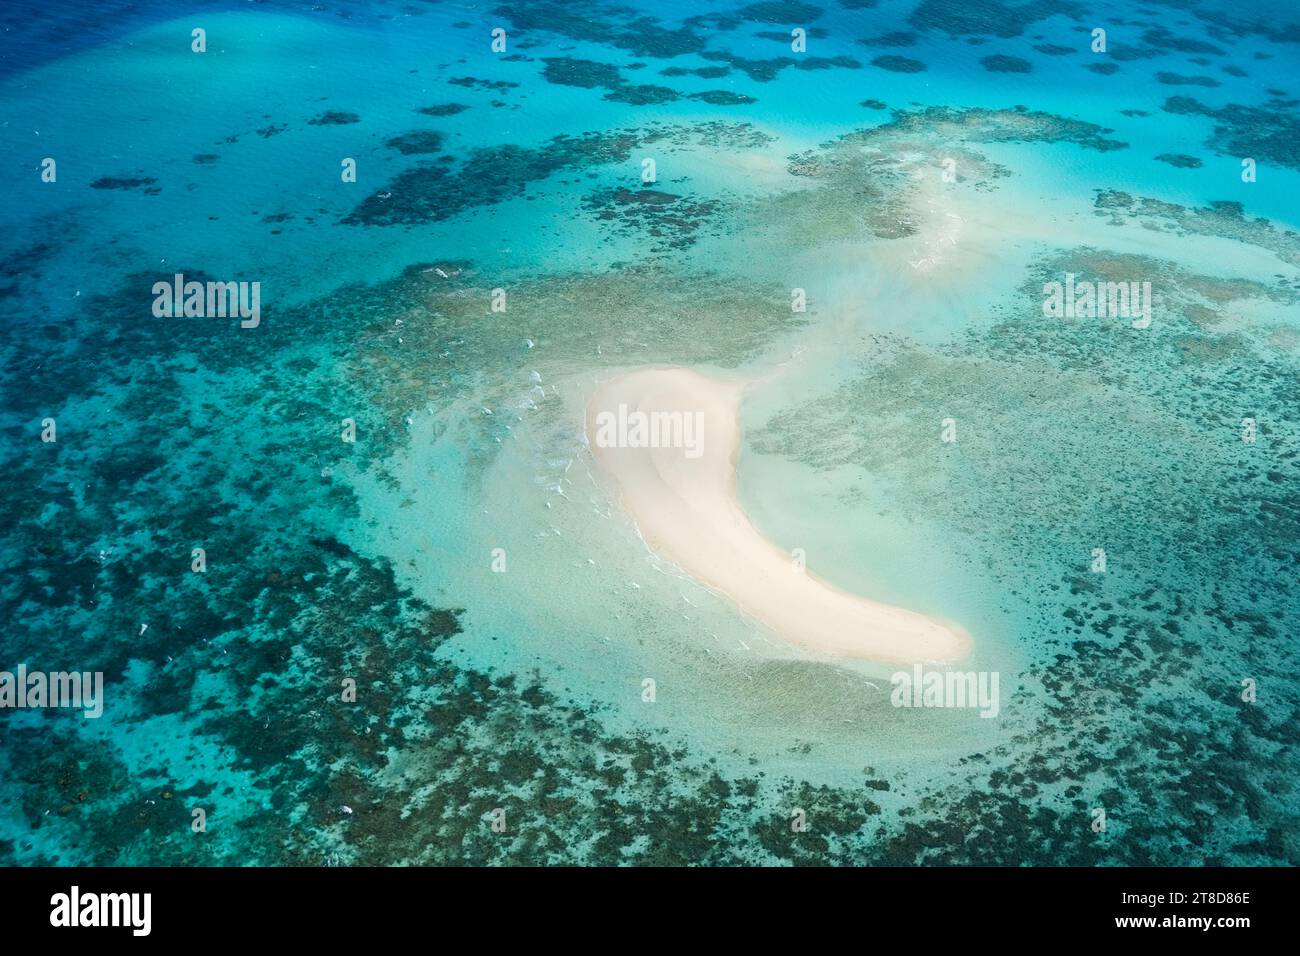 Una vista aerea di Michaelmas Cay nella grande Barriera Corallina: Barra di sabbia bianca tropicale, barriere coralline, acque cristalline turchesi, Mare dei Coralli, Cairns Foto Stock